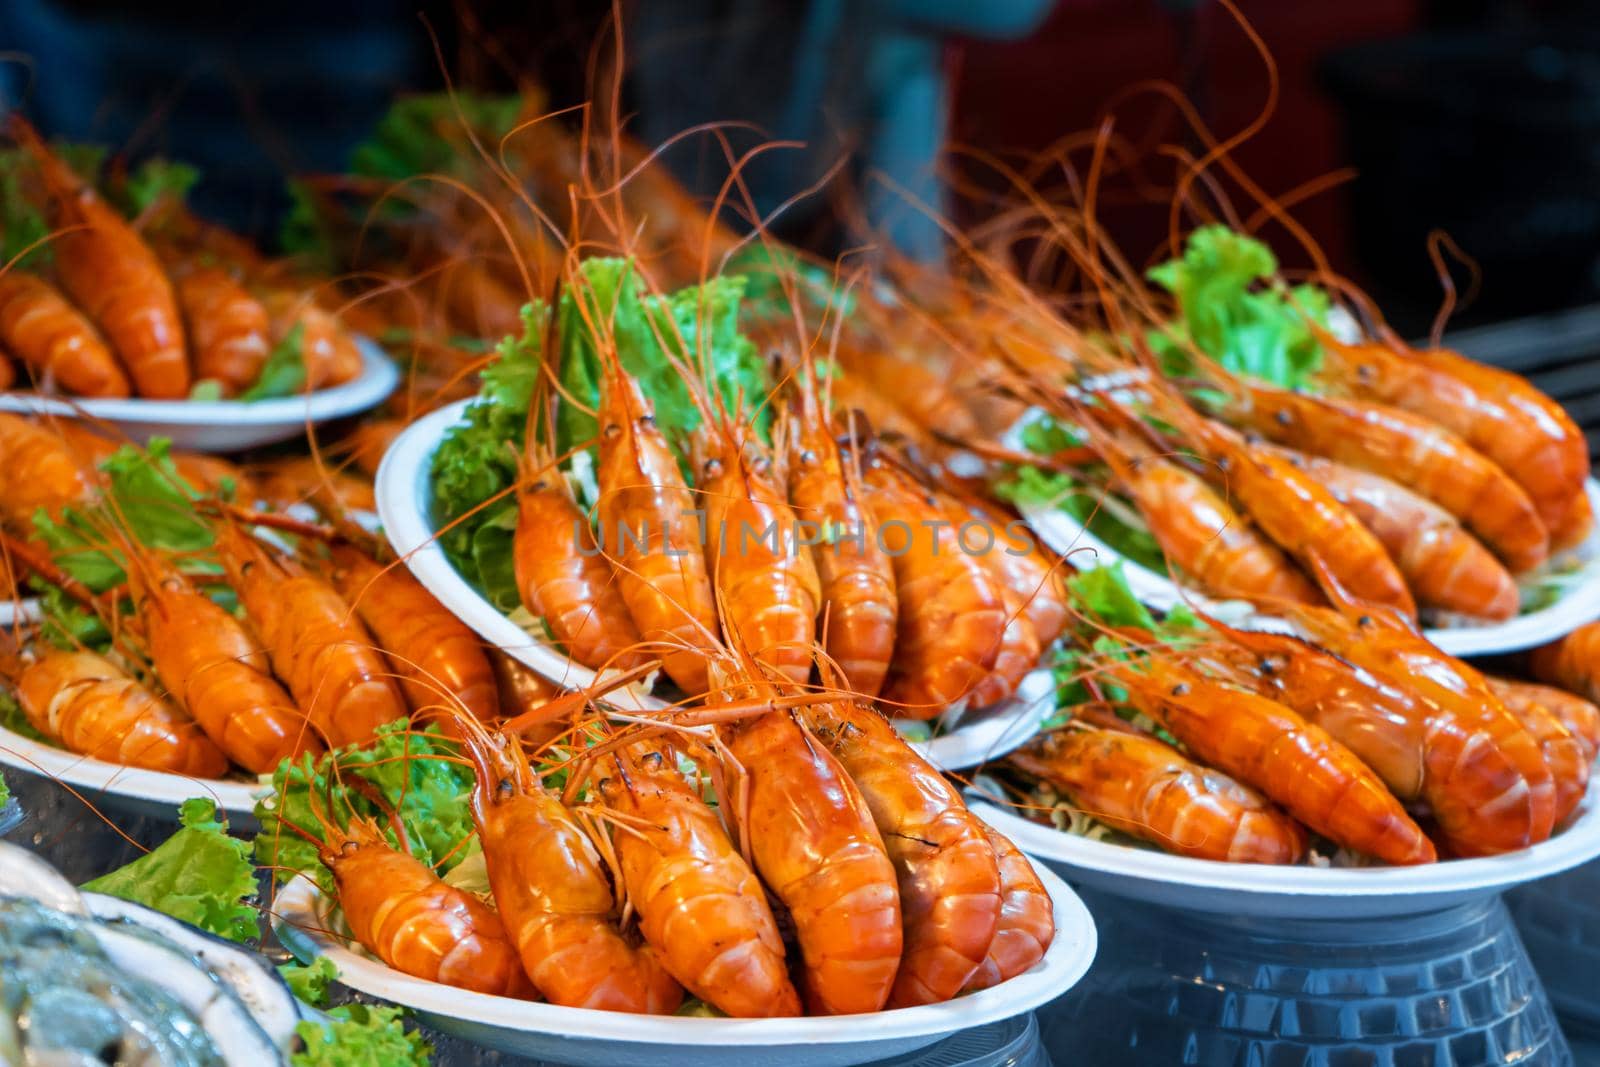 Plates of huge boiled shrimp at the street food market.